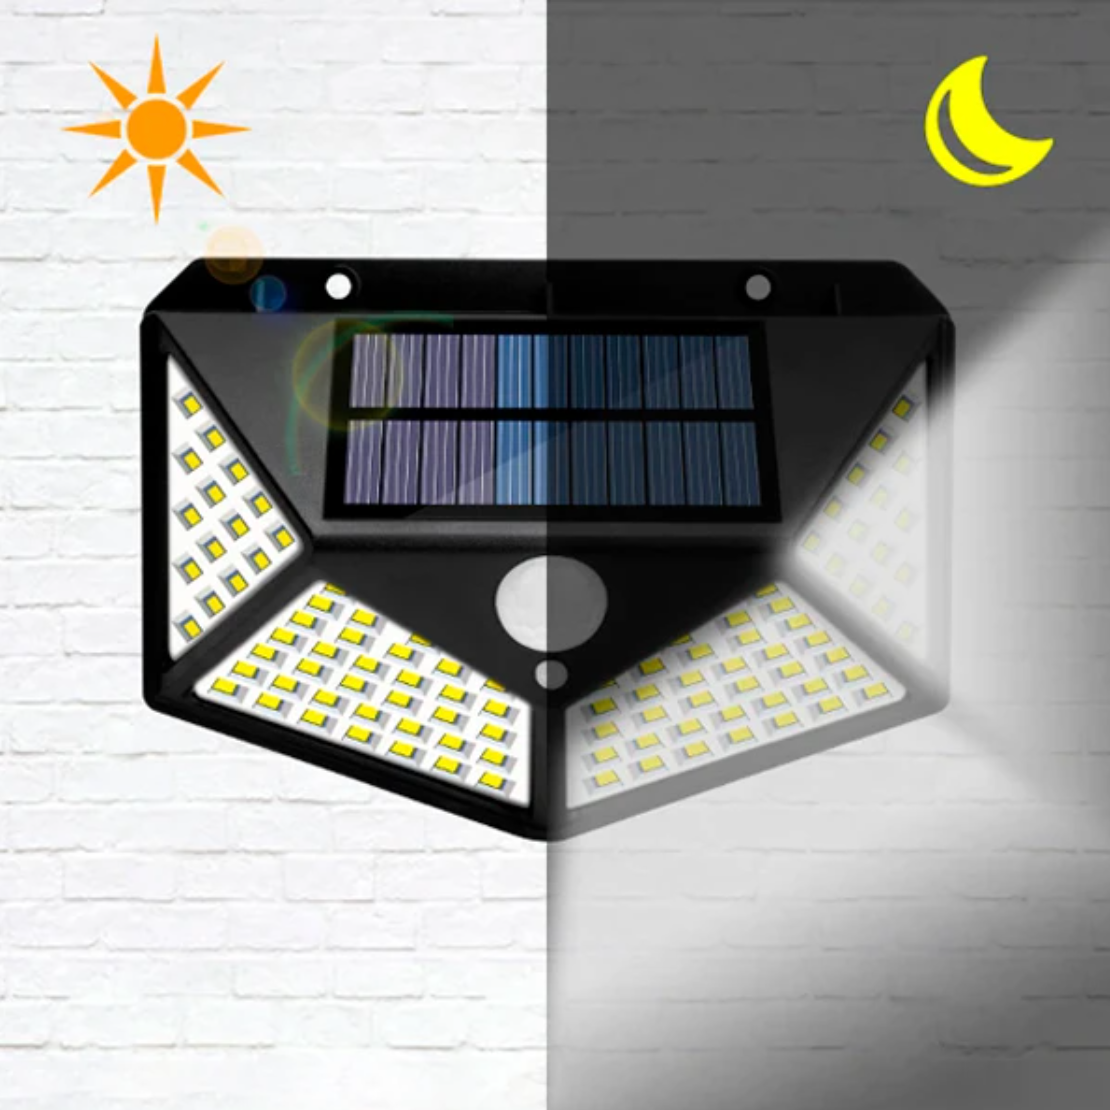 Refletor Solar SmartLed - Sua casa perfeitamente iluminada! (Promo Vip)